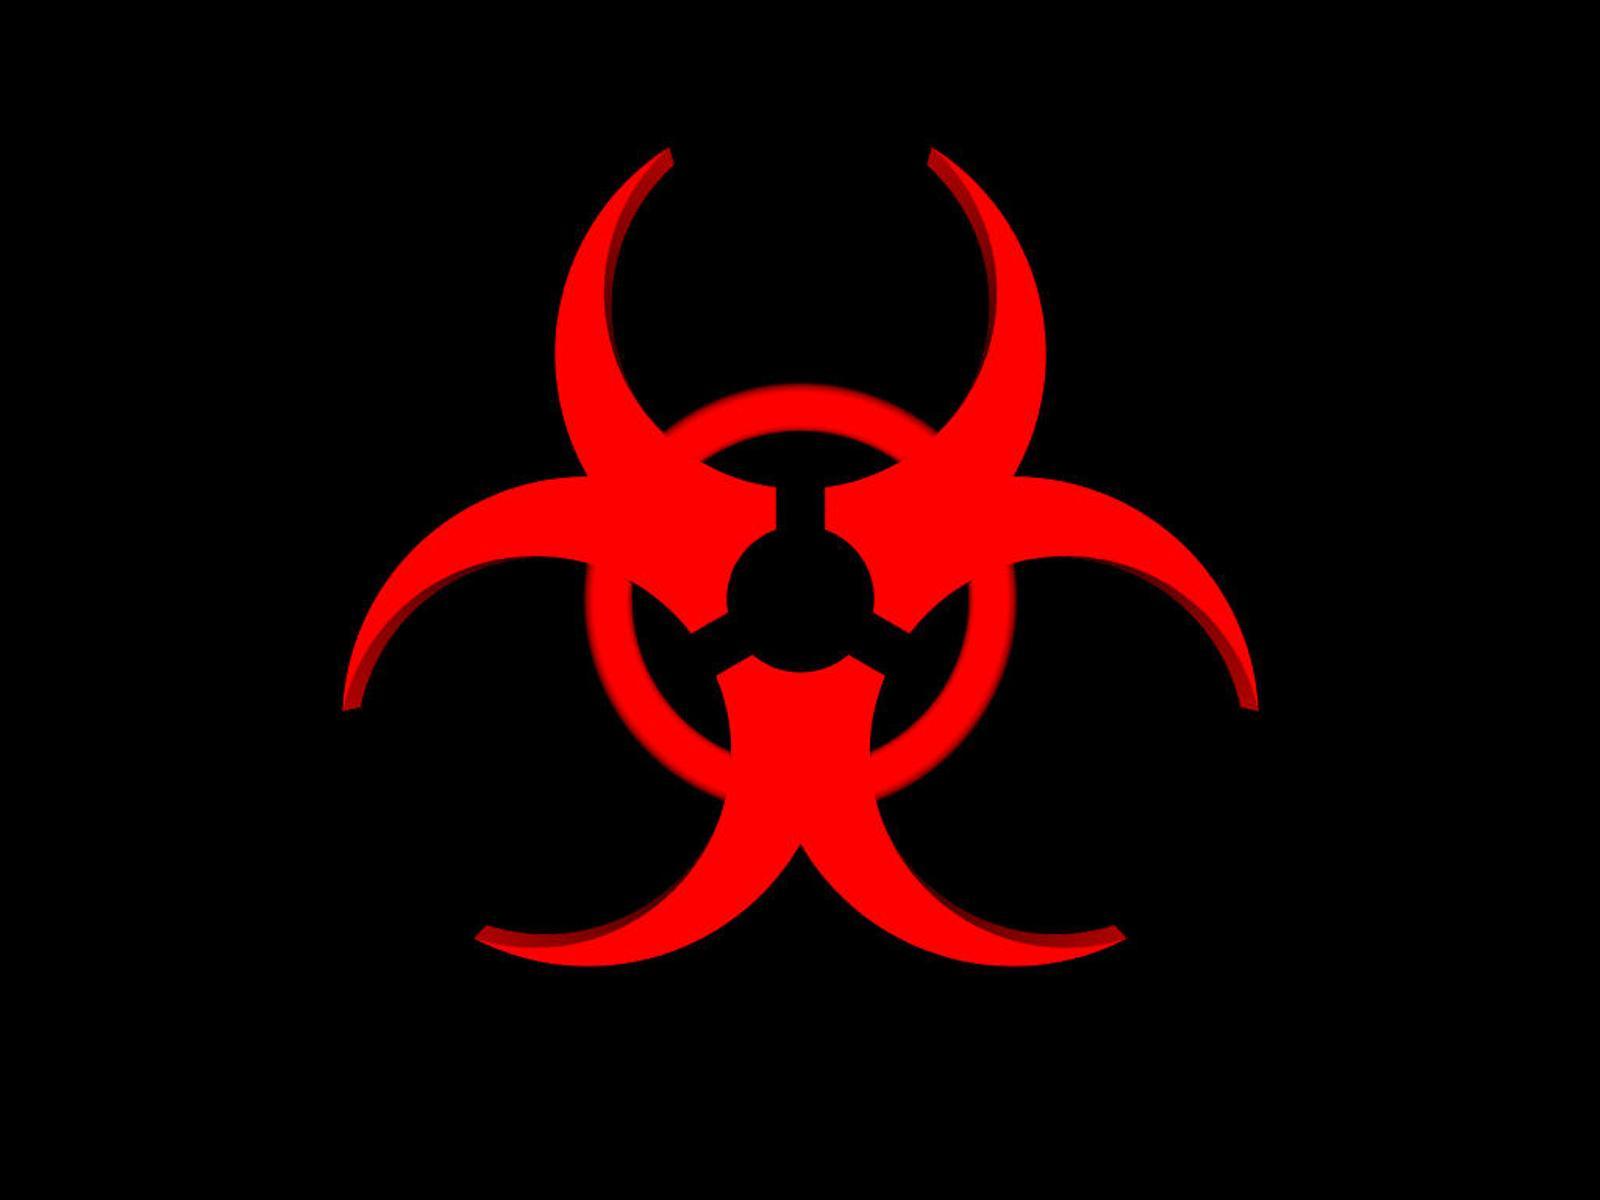 Biohazard Symbol Picture Download Wallpaper of Biohazard